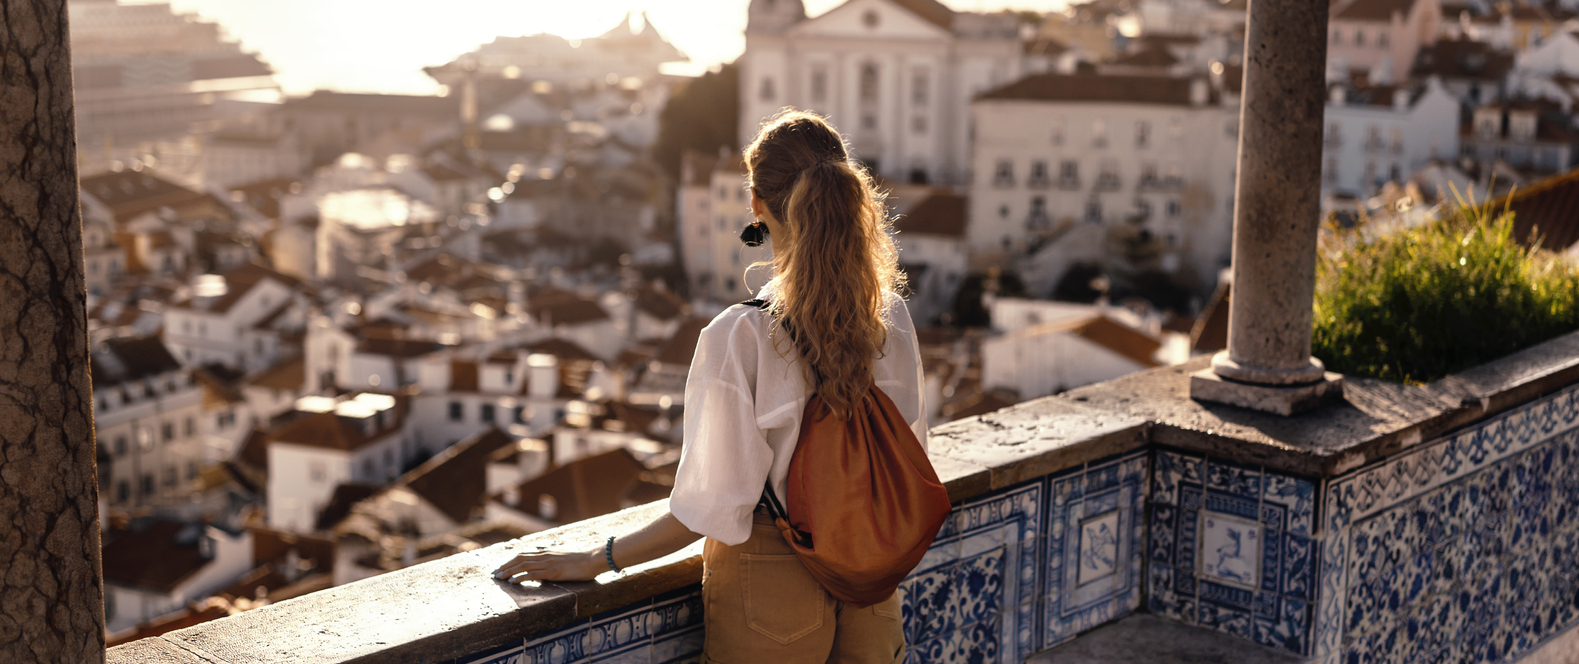 Young tourist exploring Iberian city